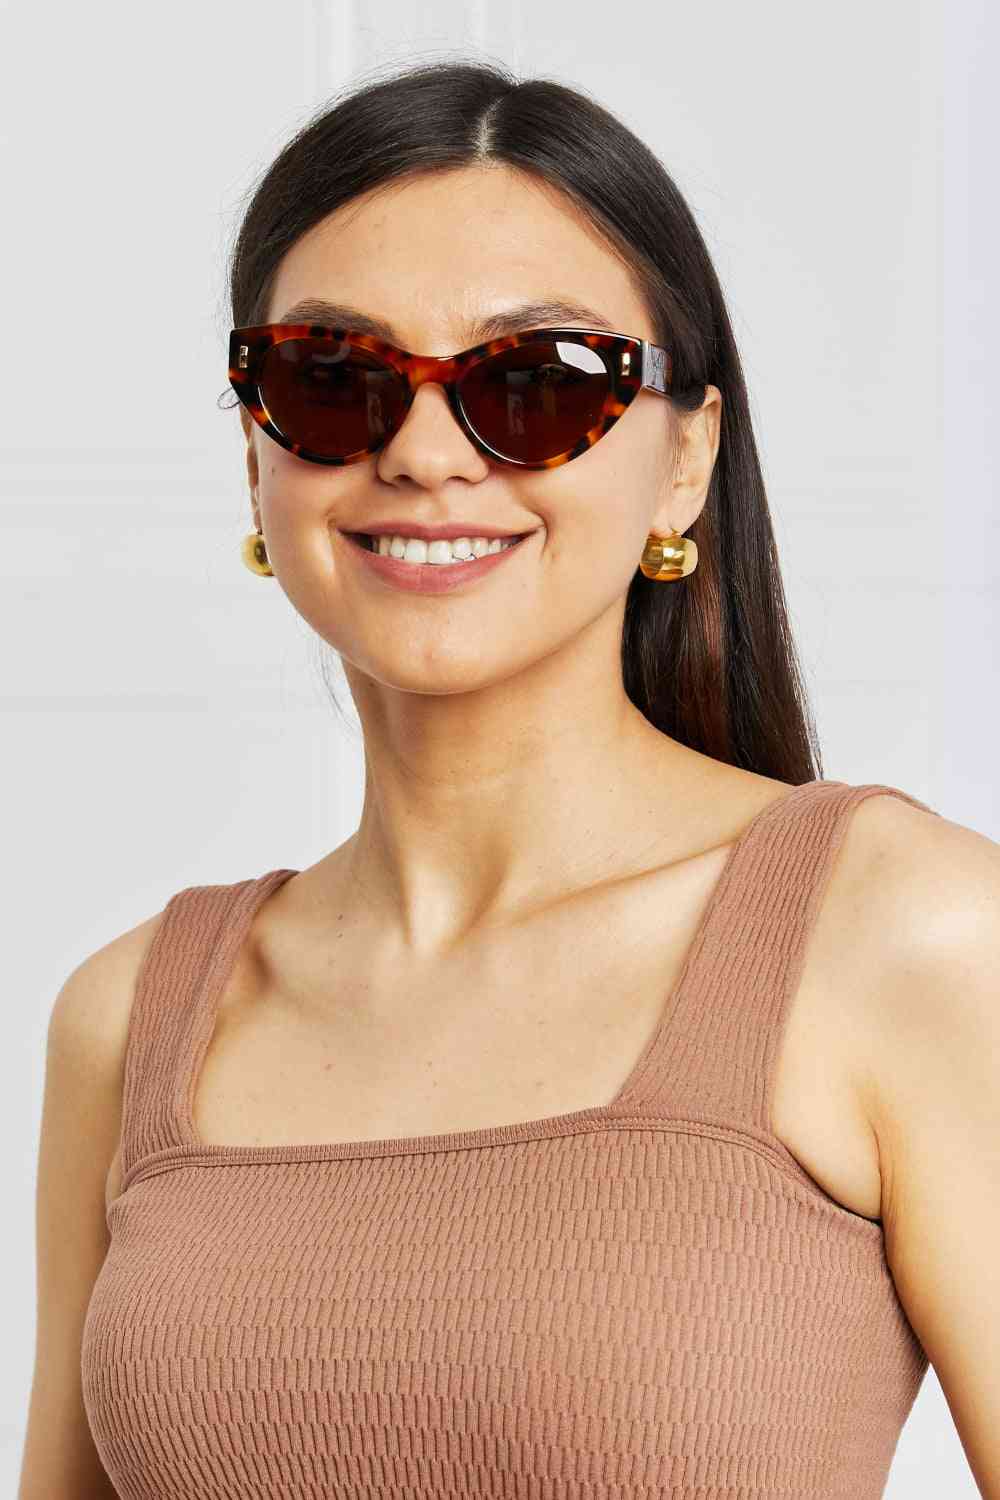 TEEK - Tangerine Cateye Tortoiseshell Sunglasses EYEGLASSES TEEK Trend   